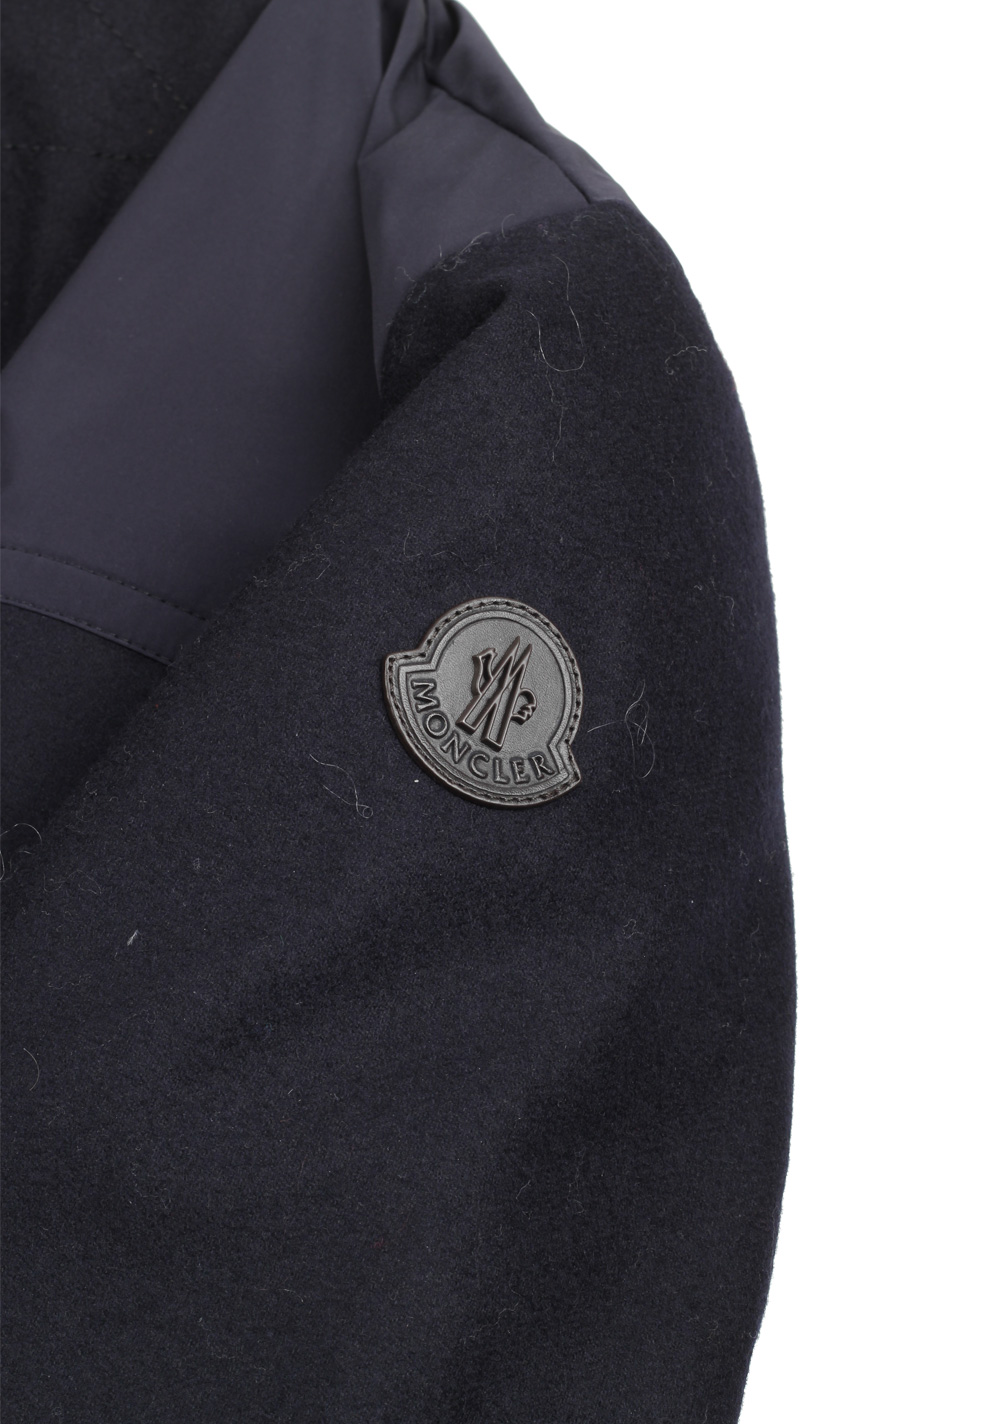 Moncler Blue Beaufort Utility Jacket Coat Size 4 / L / 52 / 42 U.S. | Costume Limité